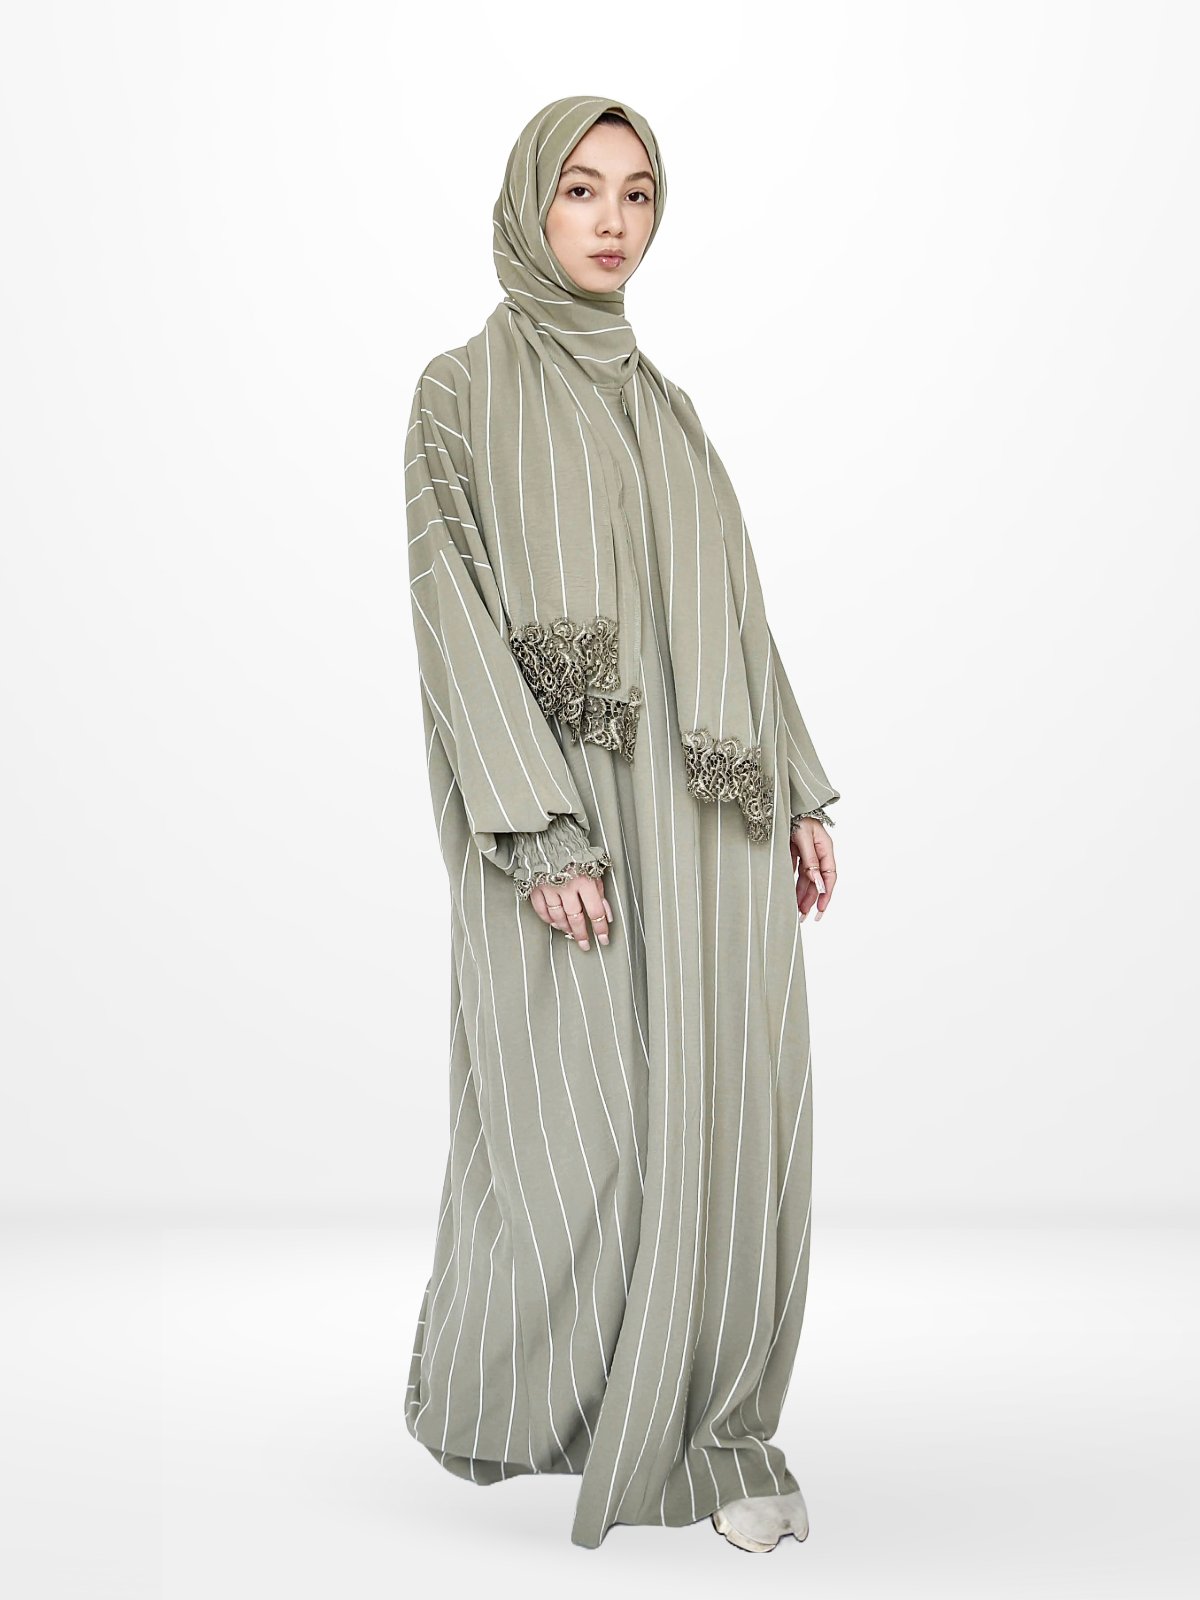 One-Piece Prayer Dress & Abaya with attached Hijab - Striped - Modest Essence